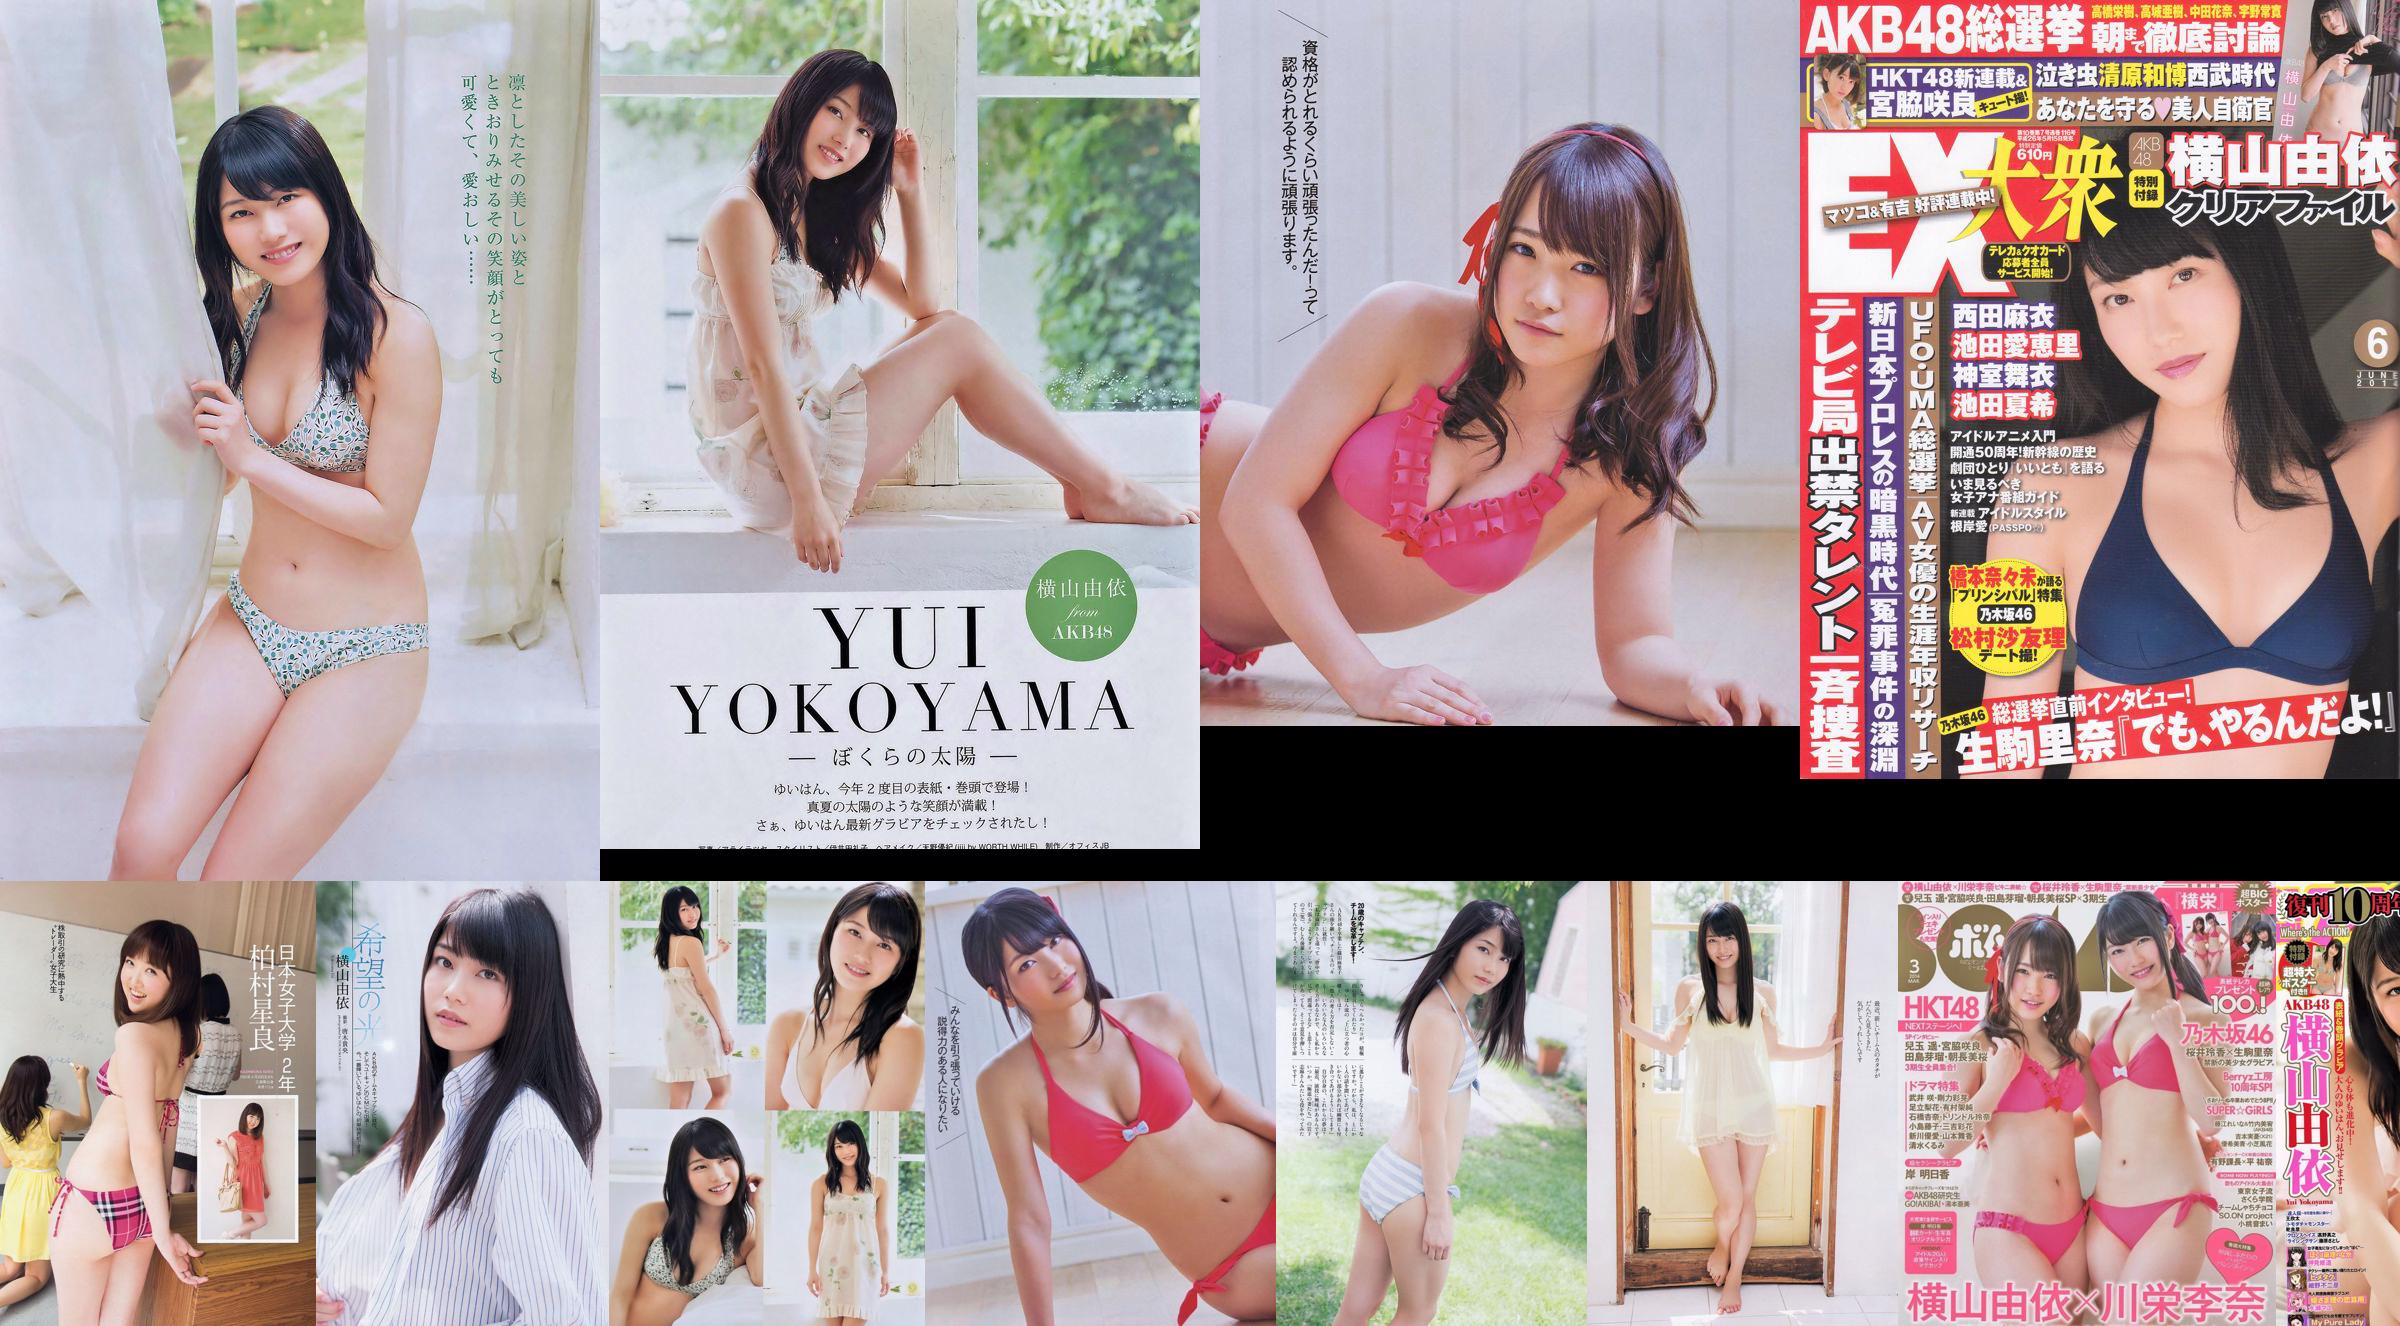 [EX Taishu] Yokoyama Yui, Miyawaki Sakura, Matsumura Sa Yuri 2014 Magazine photo n ° 06 No.99f0be Page 25